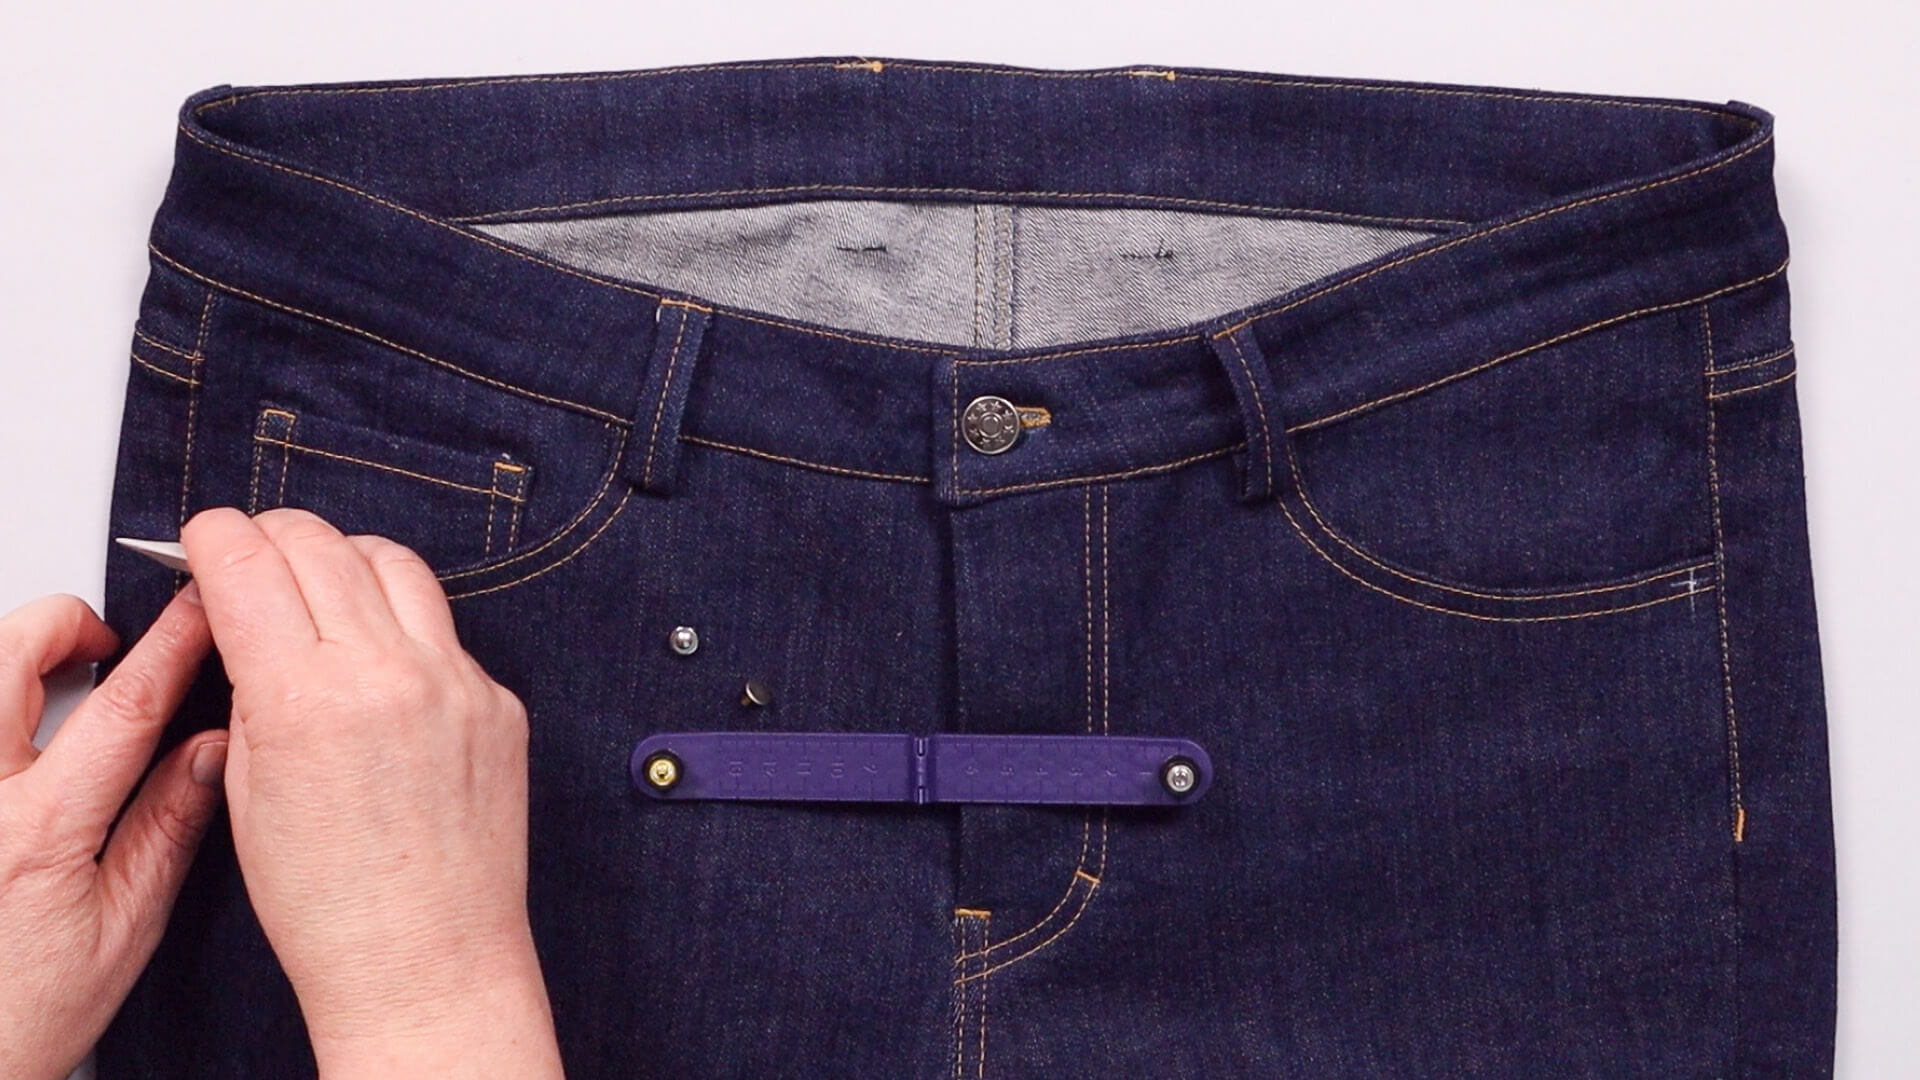 smartPATTERN Nähanleitung zum Anbringen von Nieten an Jeanshose - Nietenposition 1 cm von Seitennaht anzeichnen